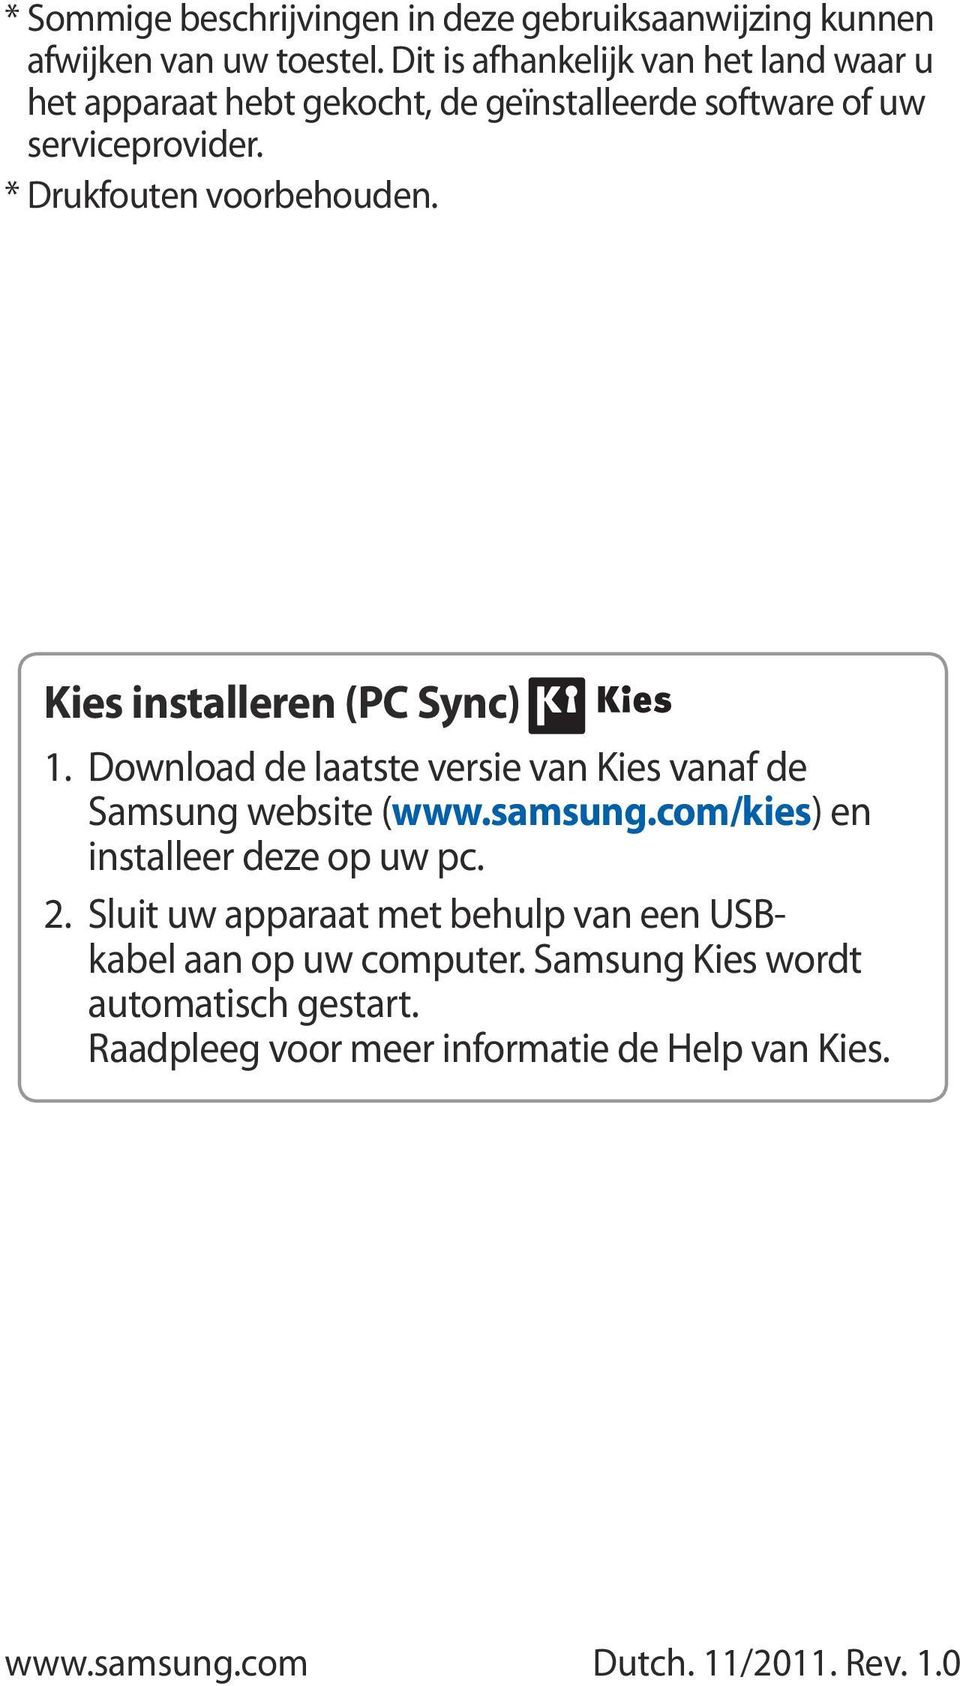 * Drukfouten voorbehouden. Kies installeren (PC Sync). Download de laatste versie van Kies vanaf de Samsung website (www.samsung.